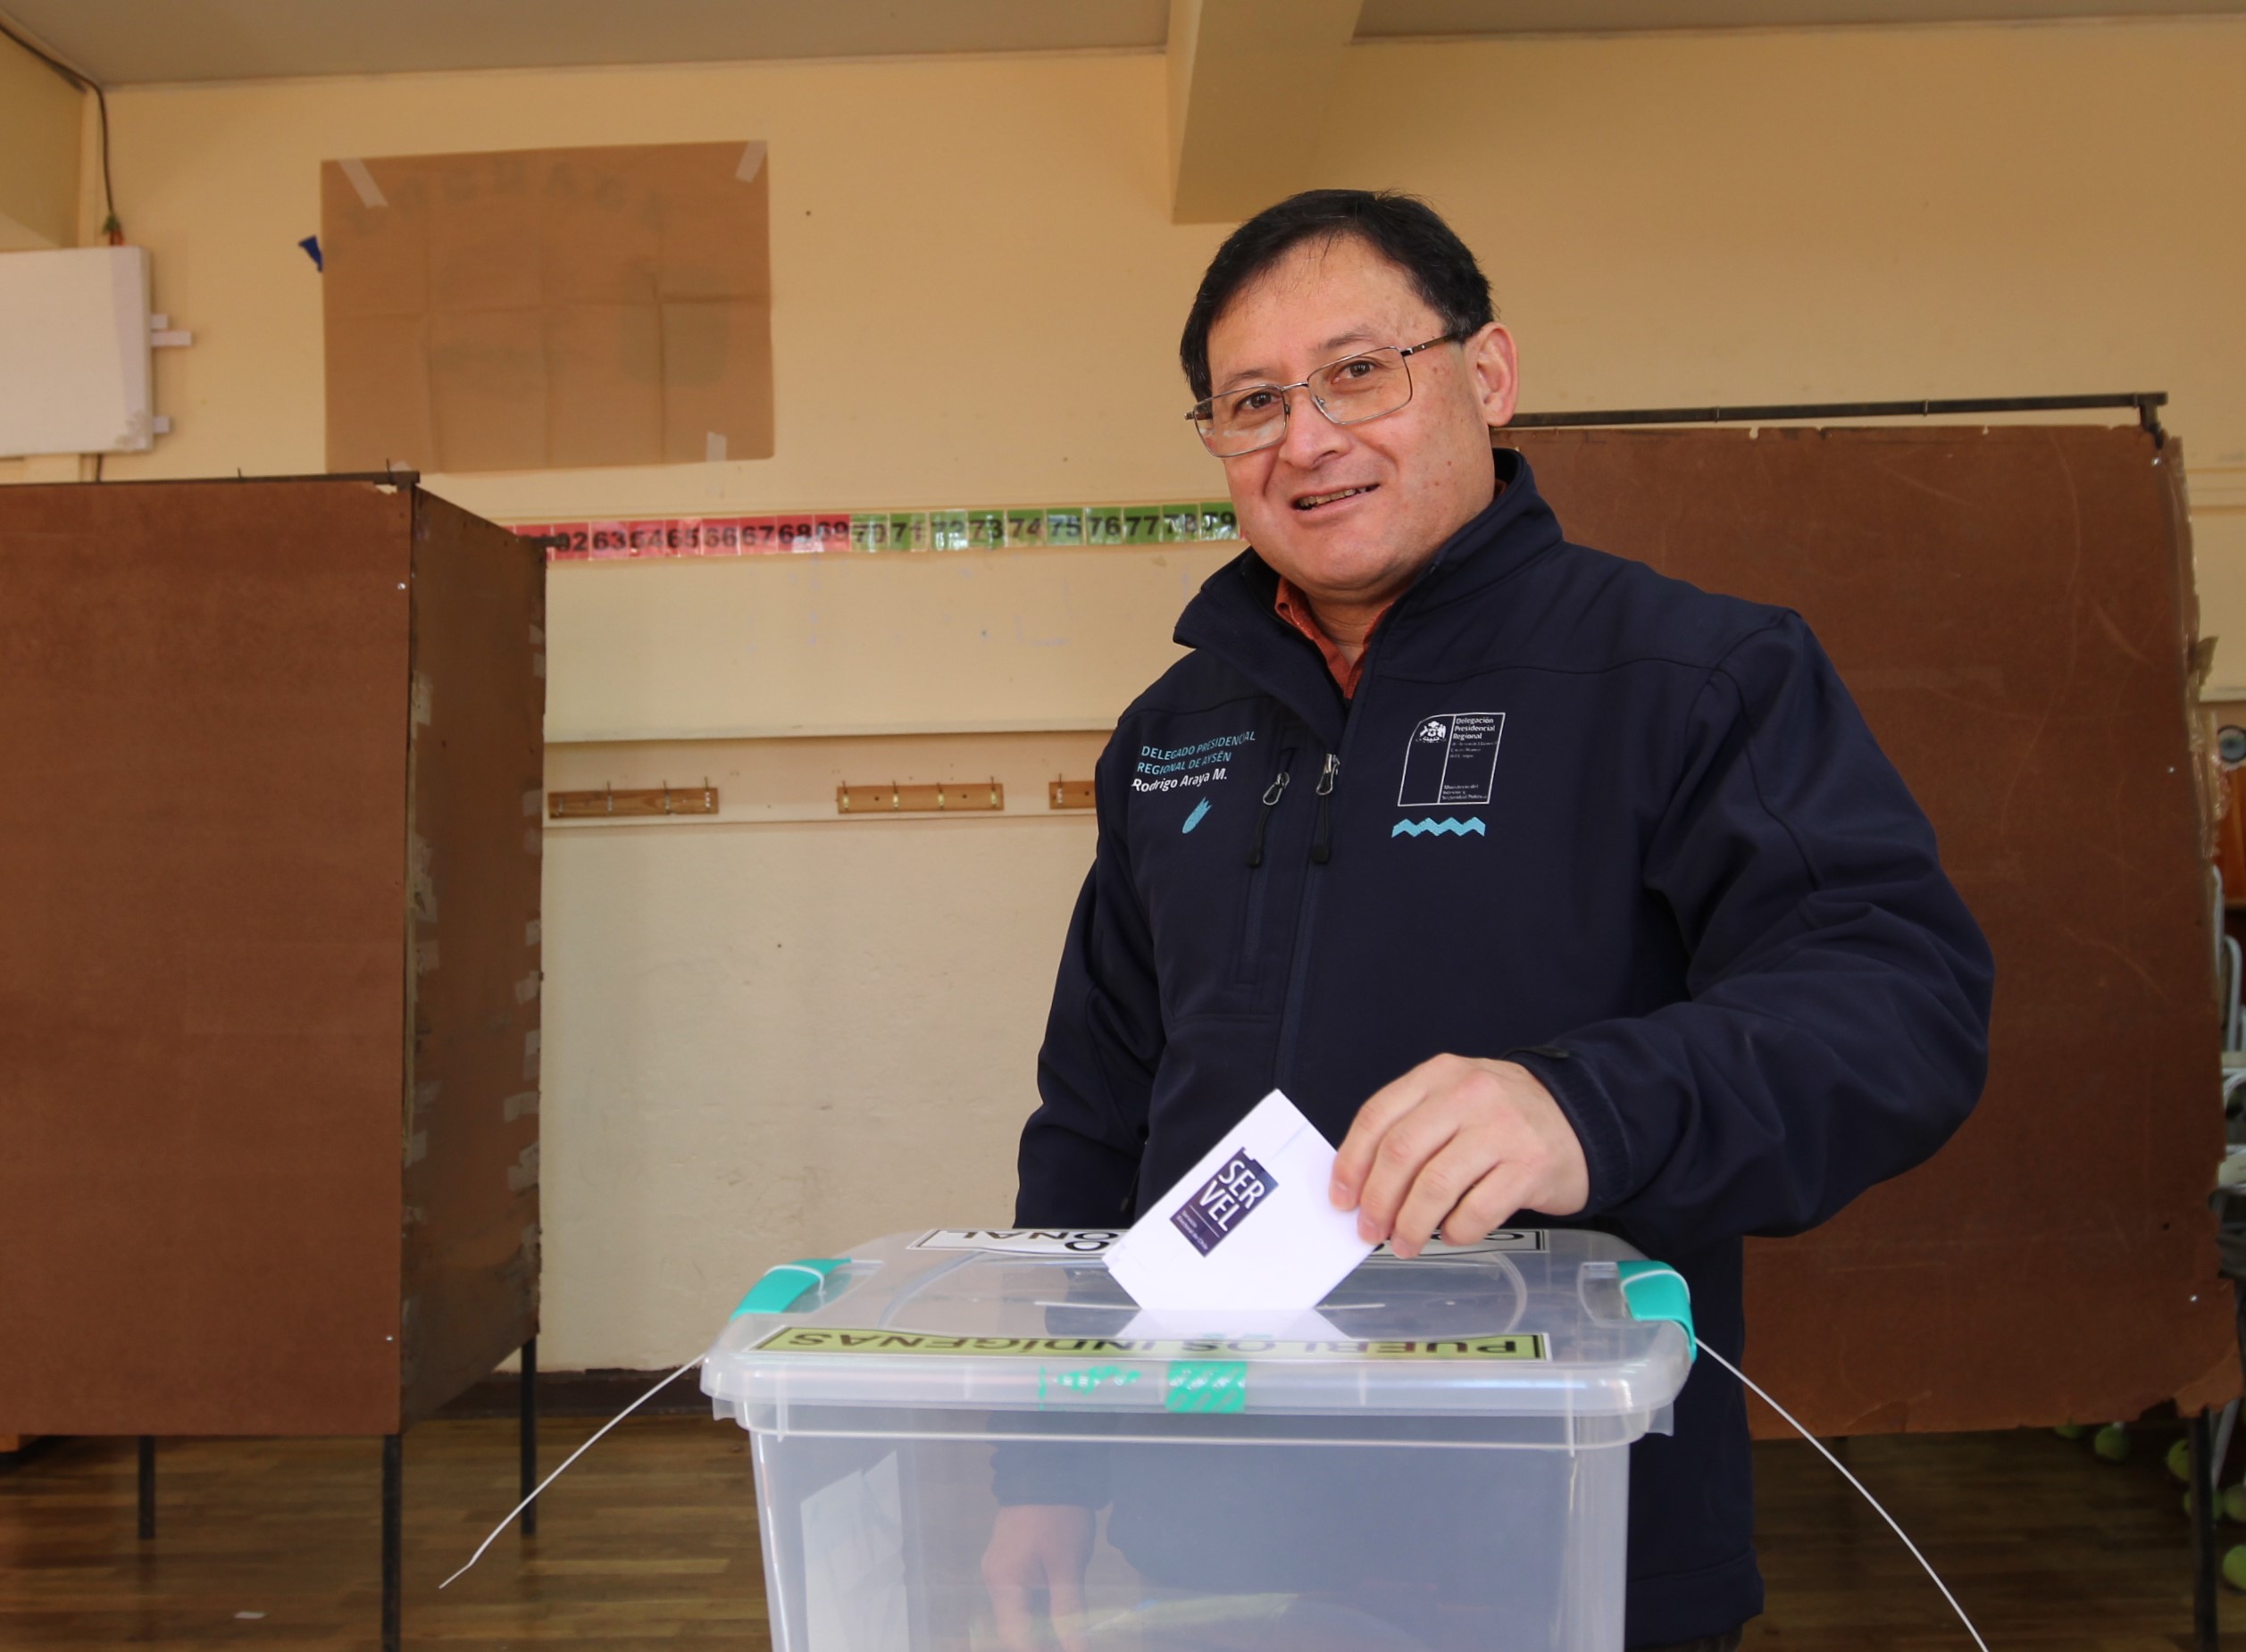 64 mil Personas Votaron en la Región de Aysén en las Elecciones Para Consejeros Constitucionales